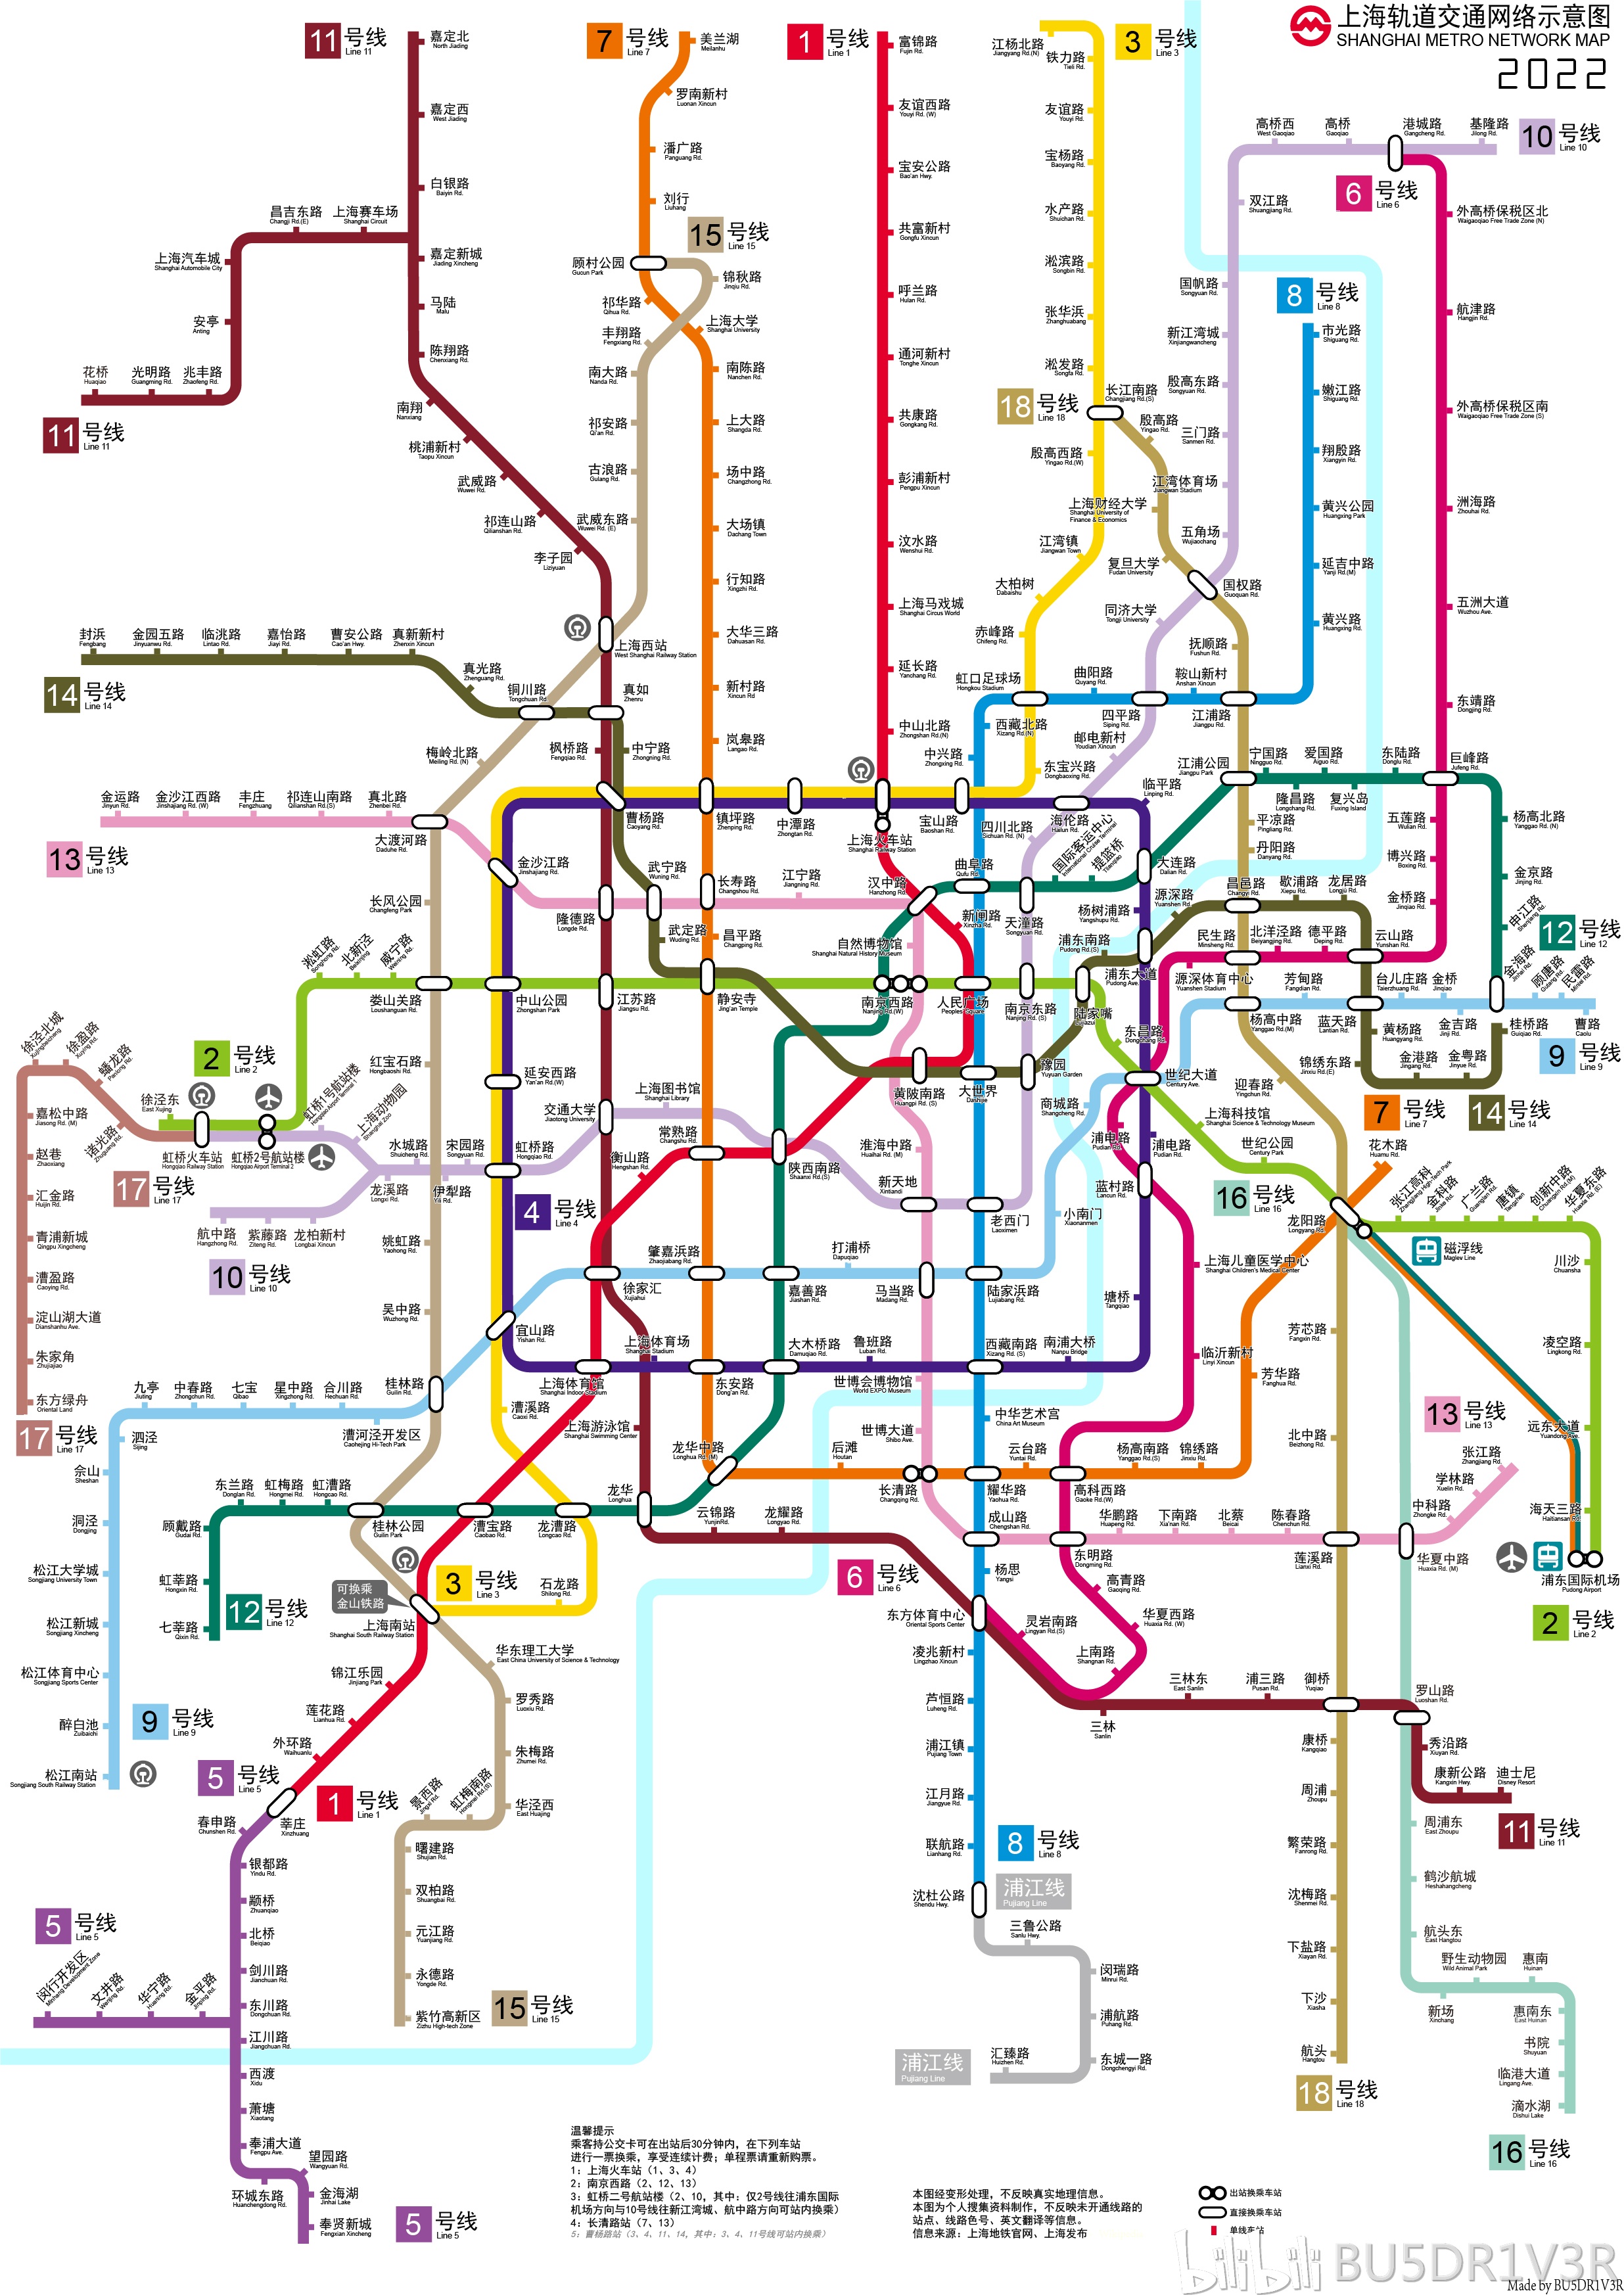 全新版 “上海地铁高清大图” 亮相_新浪上海_新浪网